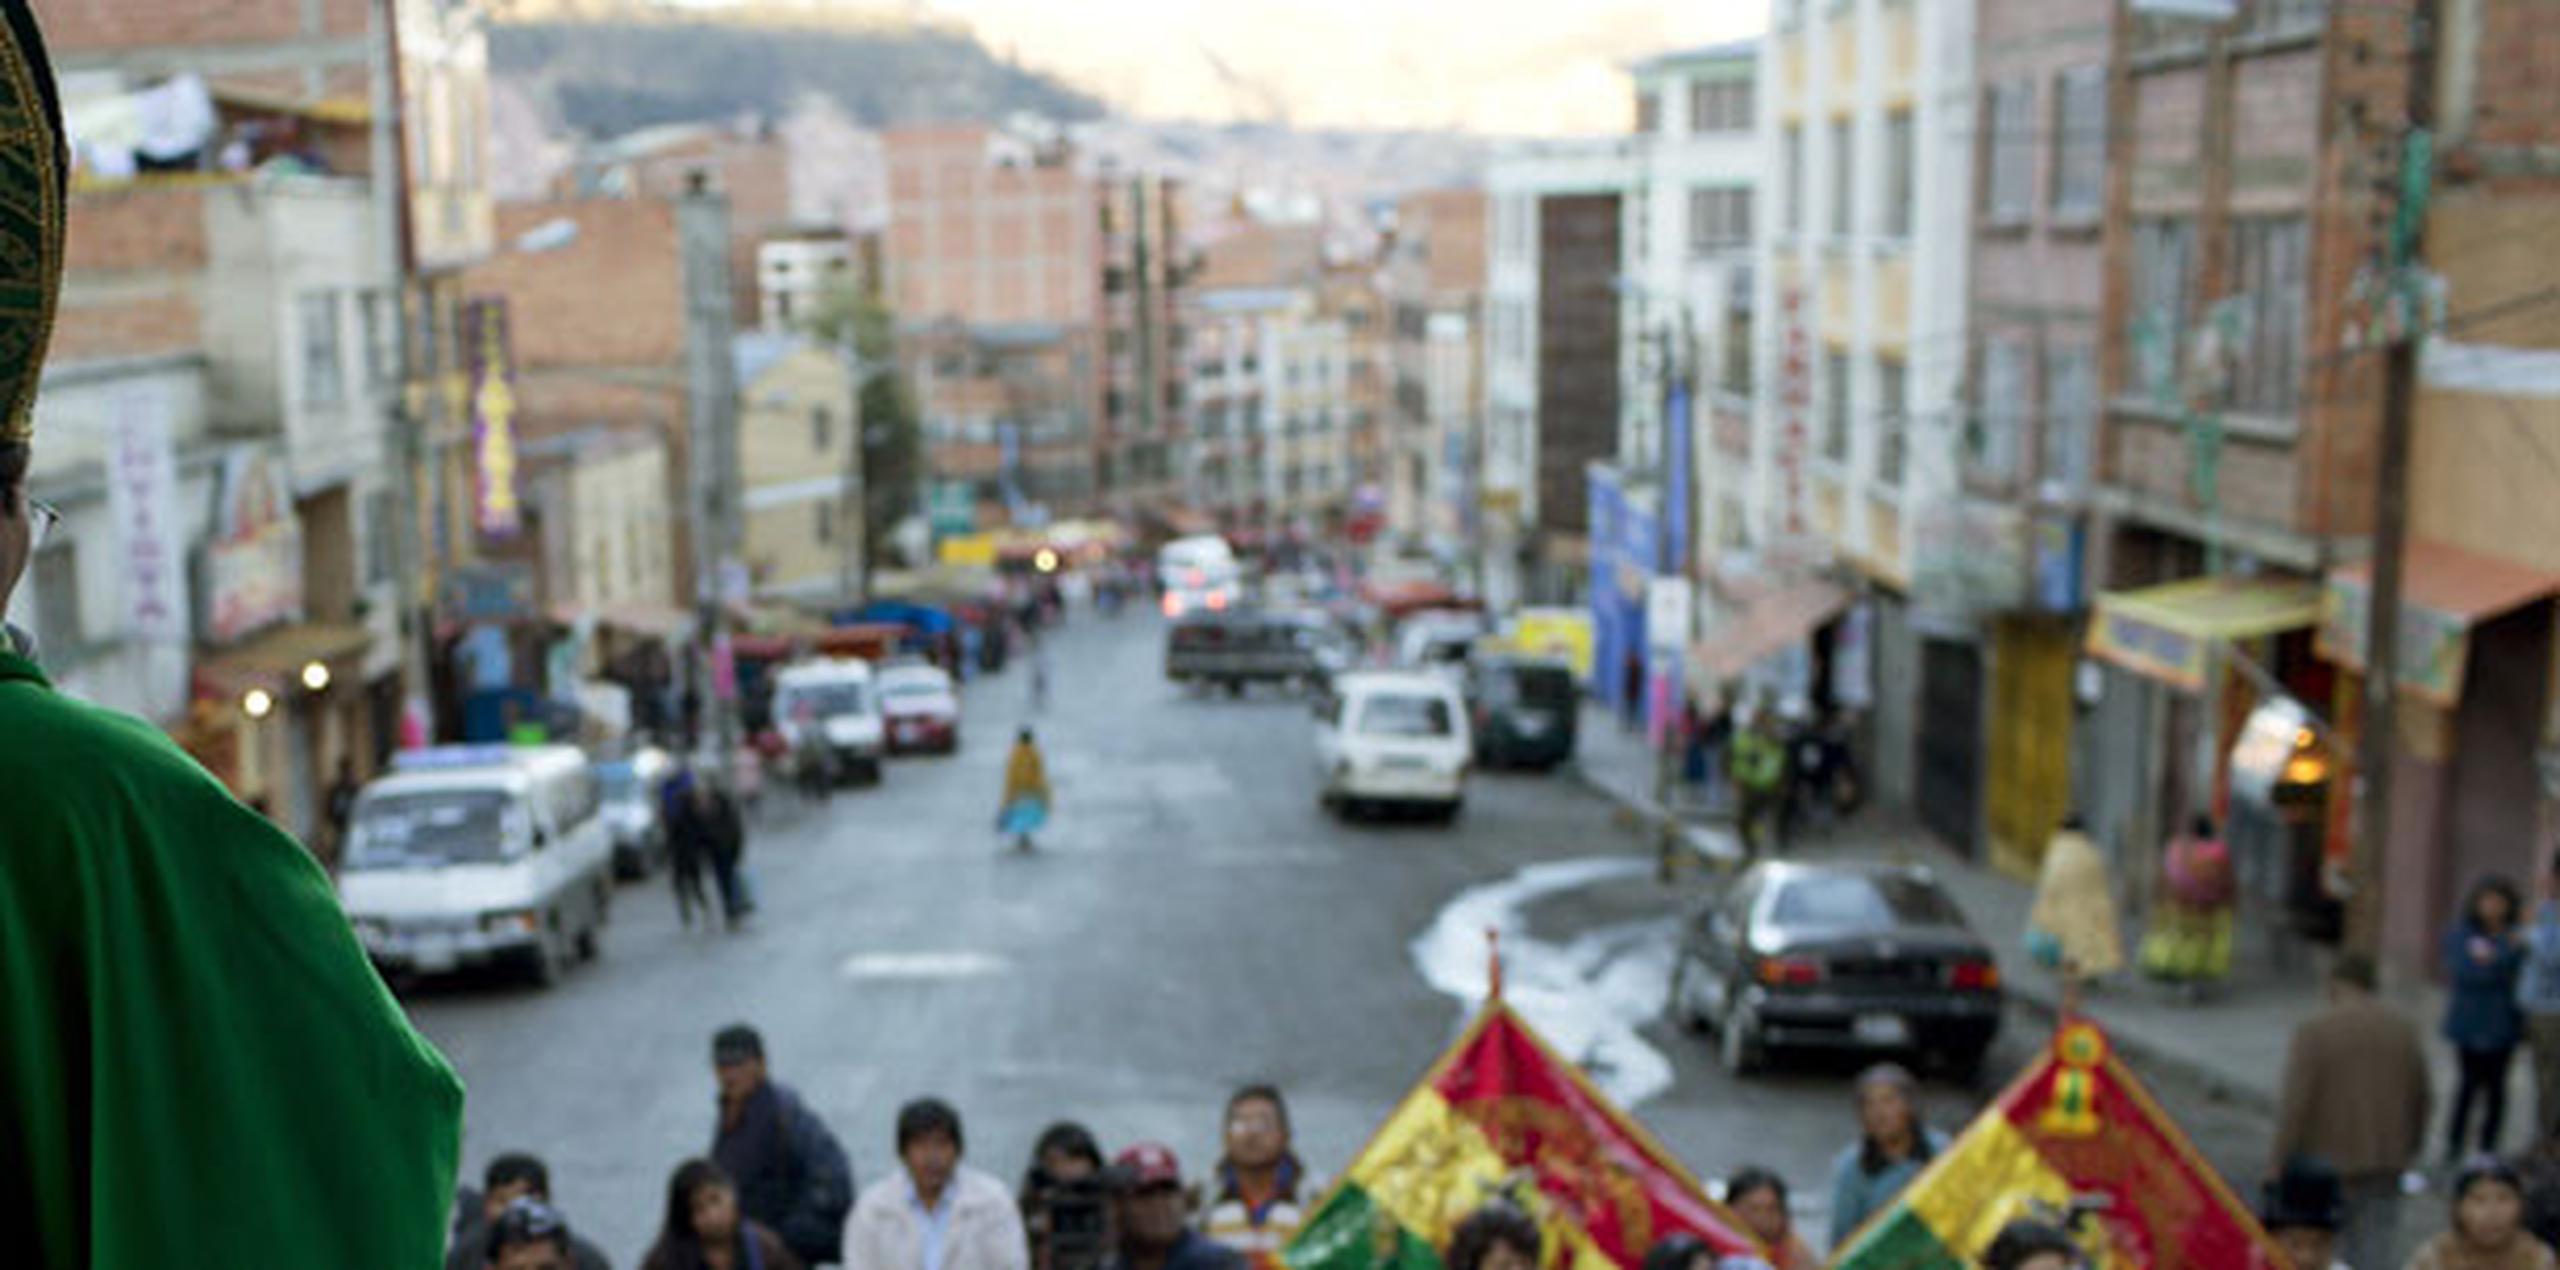 El crimen se produjo el domingo en un barrio popular de la ciudad de Santa Cruz, a unos 480 kilómetros al este de La Paz. (Archivo)